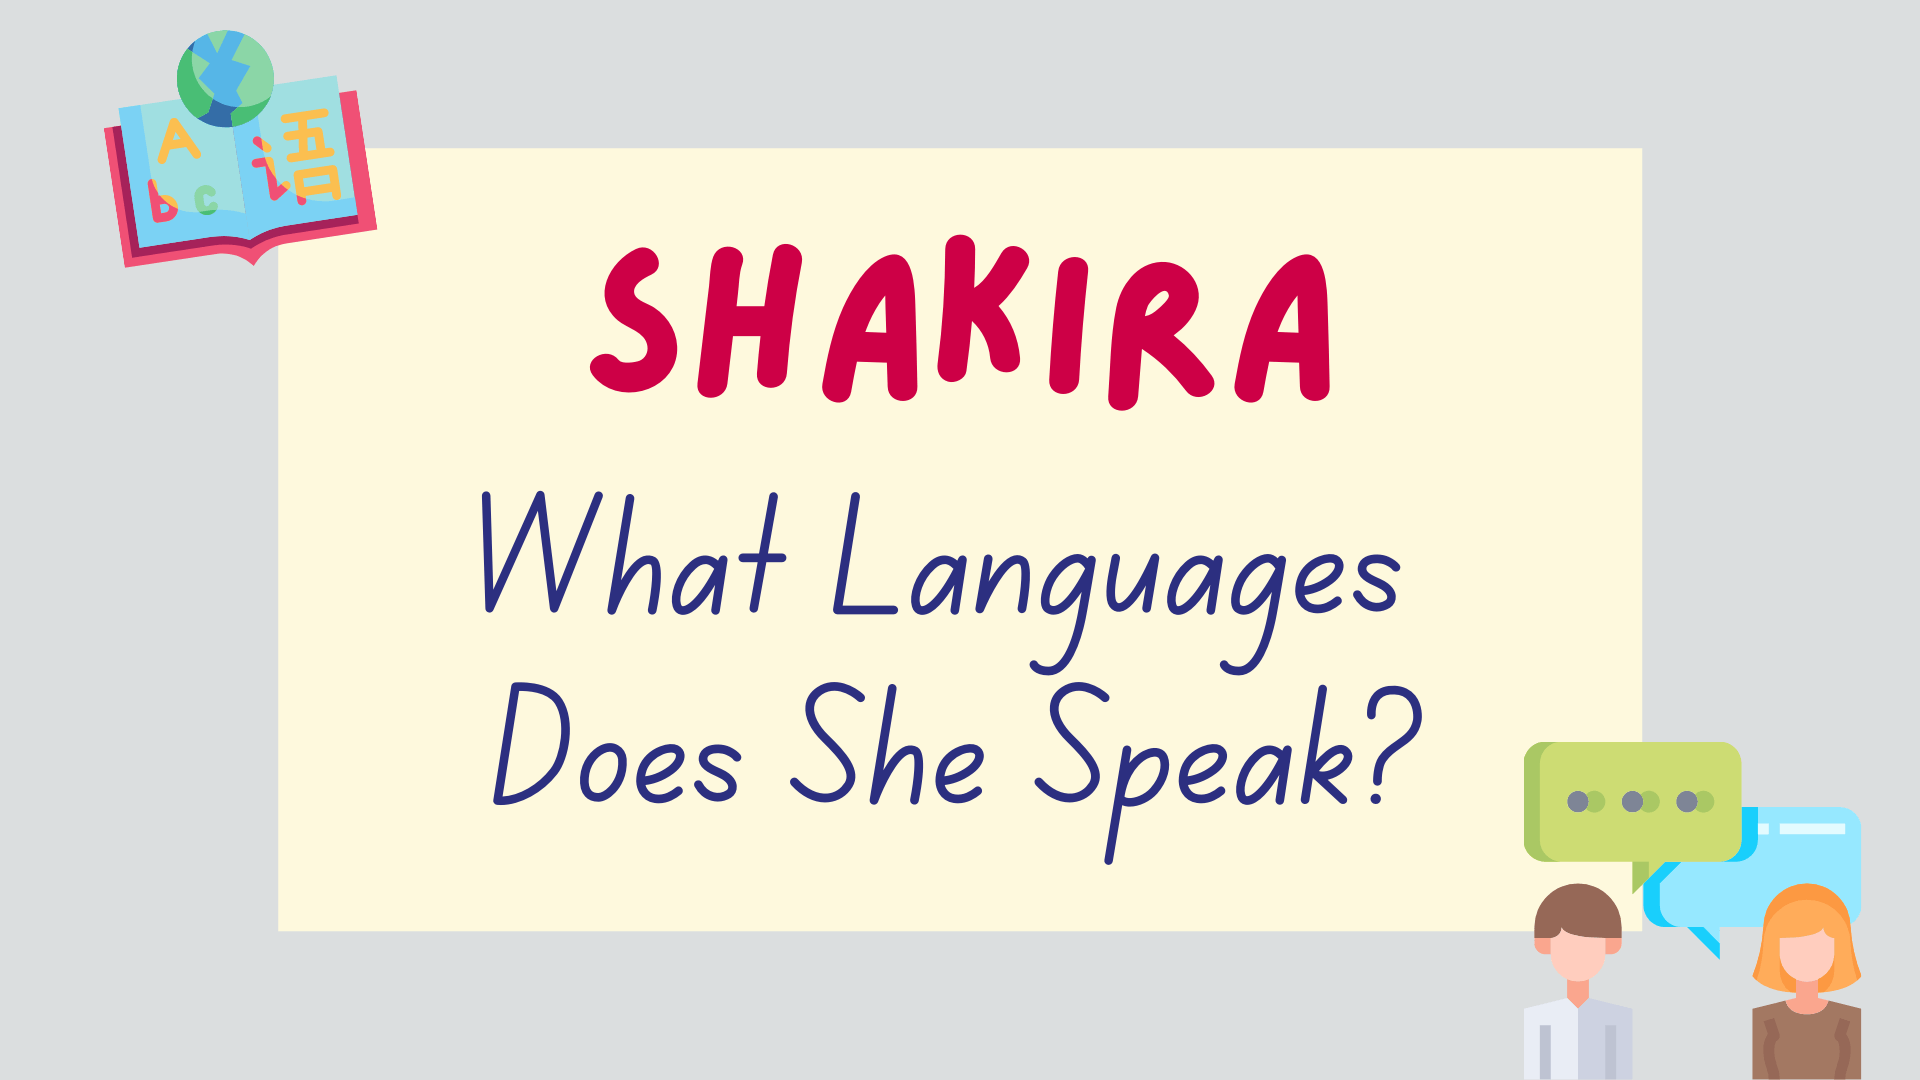 How Many Languages Does Shakira Speak? - Lingalot